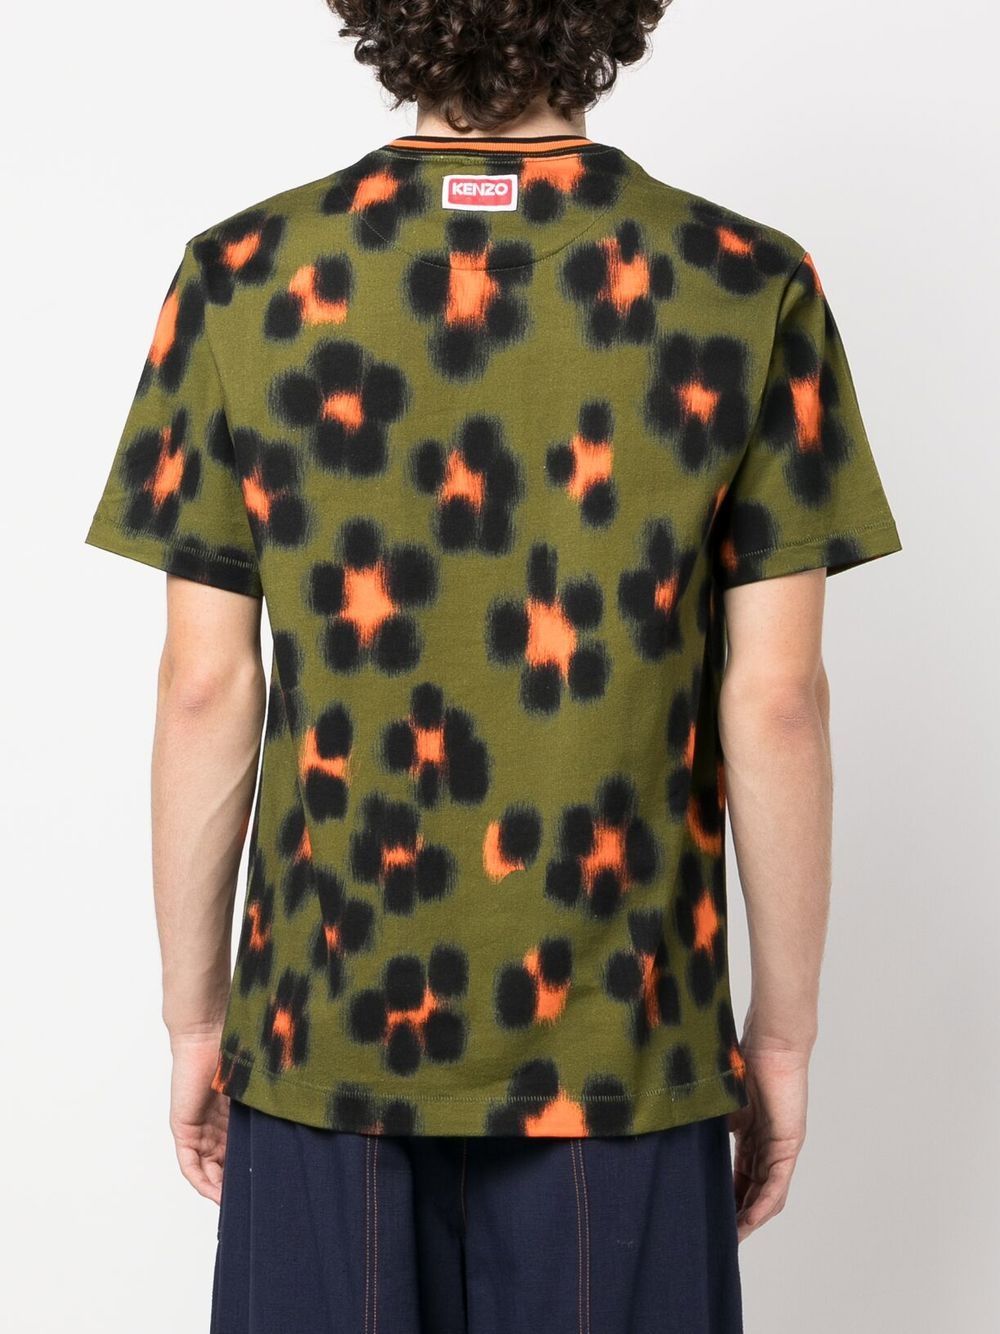 leopard-print short-sleeve T-shirt